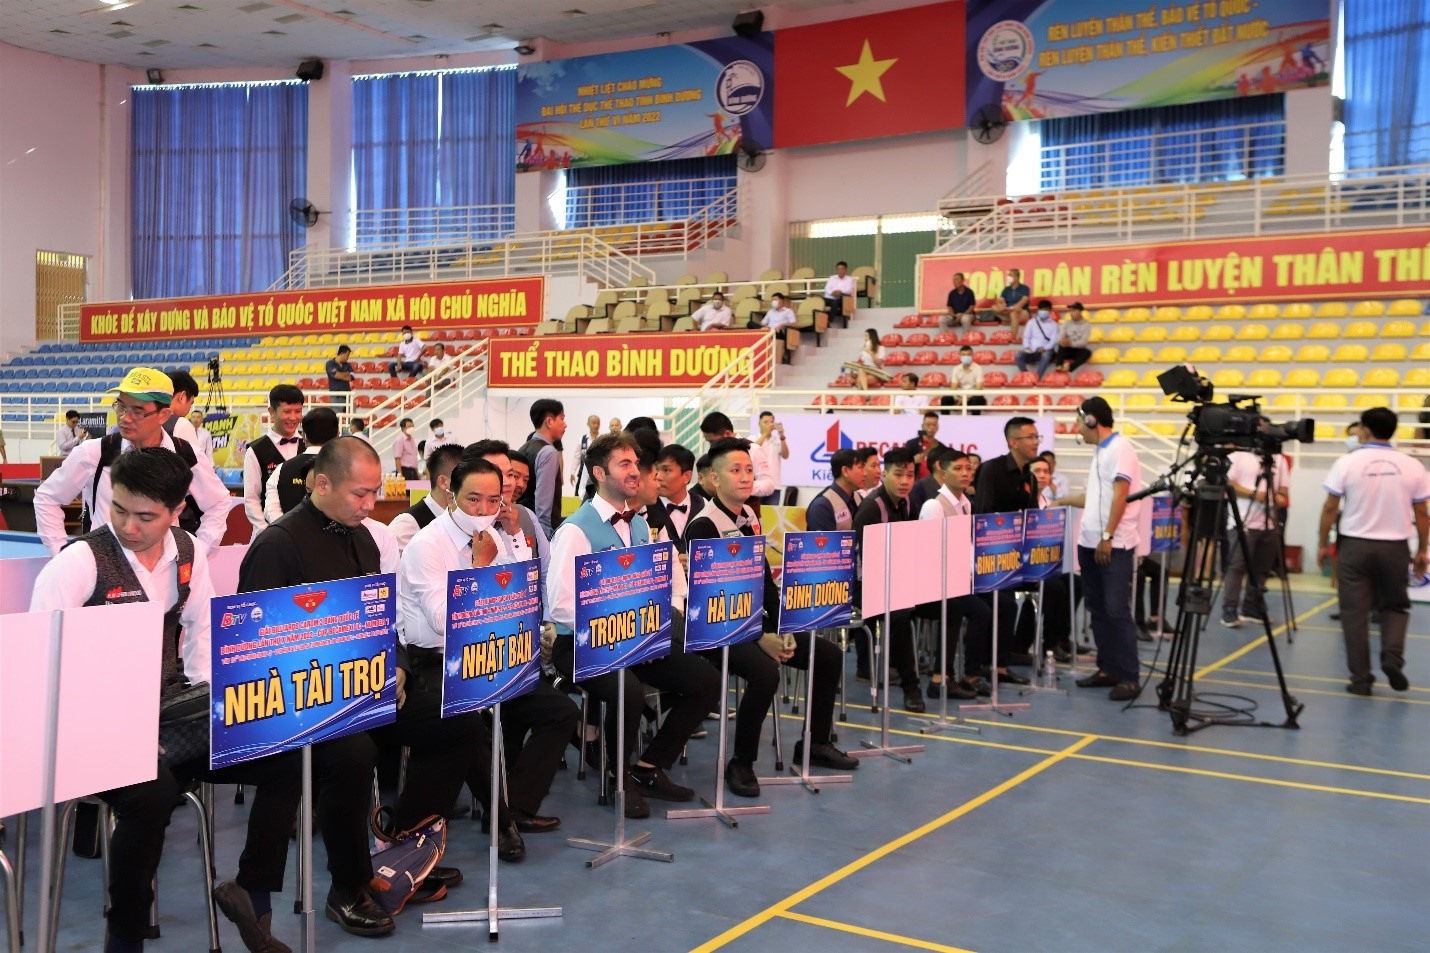 soccer skills world cup crazy games Trang web cờ bạc trực tuyến lớn nhất  Việt Nam, w9bet.com, đánh nhau với gà trống, bắn cá và baccarat, và giành  được hàng chục triệu